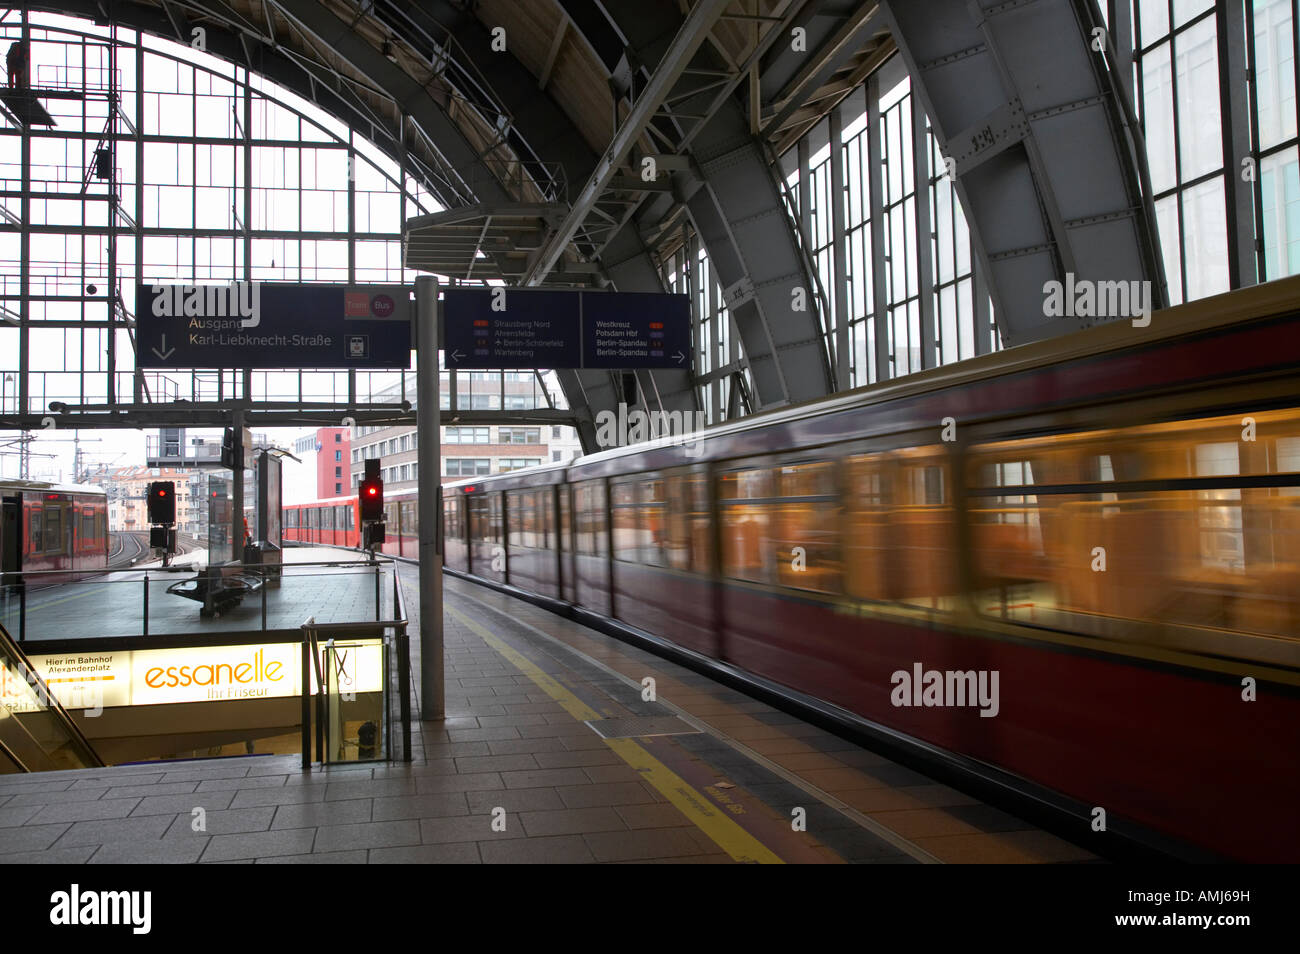 La vitesse des trains S-Bahn Berlin dernière plate-forme à la gare Alexanderplatz Allemagne Banque D'Images